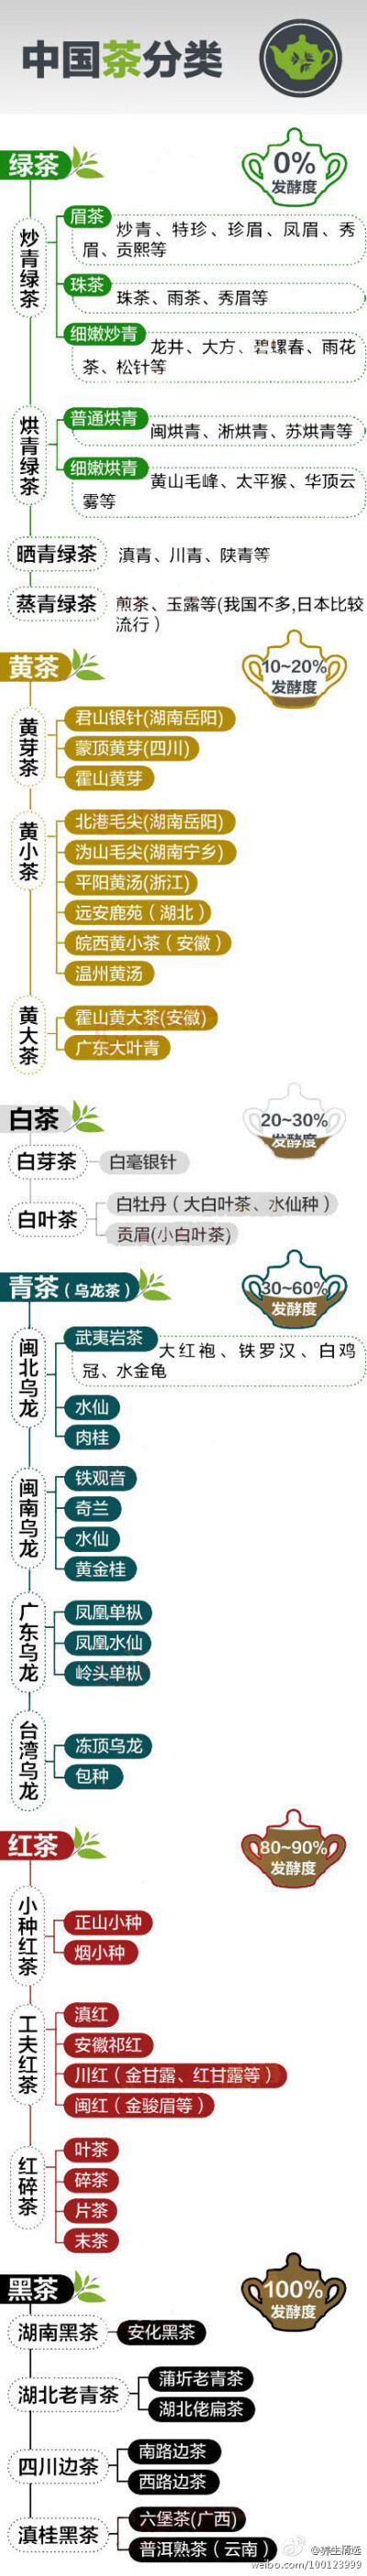 一张图告诉你中国茶的分类】绿茶、黄茶、白茶、青茶、红茶、黑茶……名目繁多，用一张图告诉你中国茶的分类。